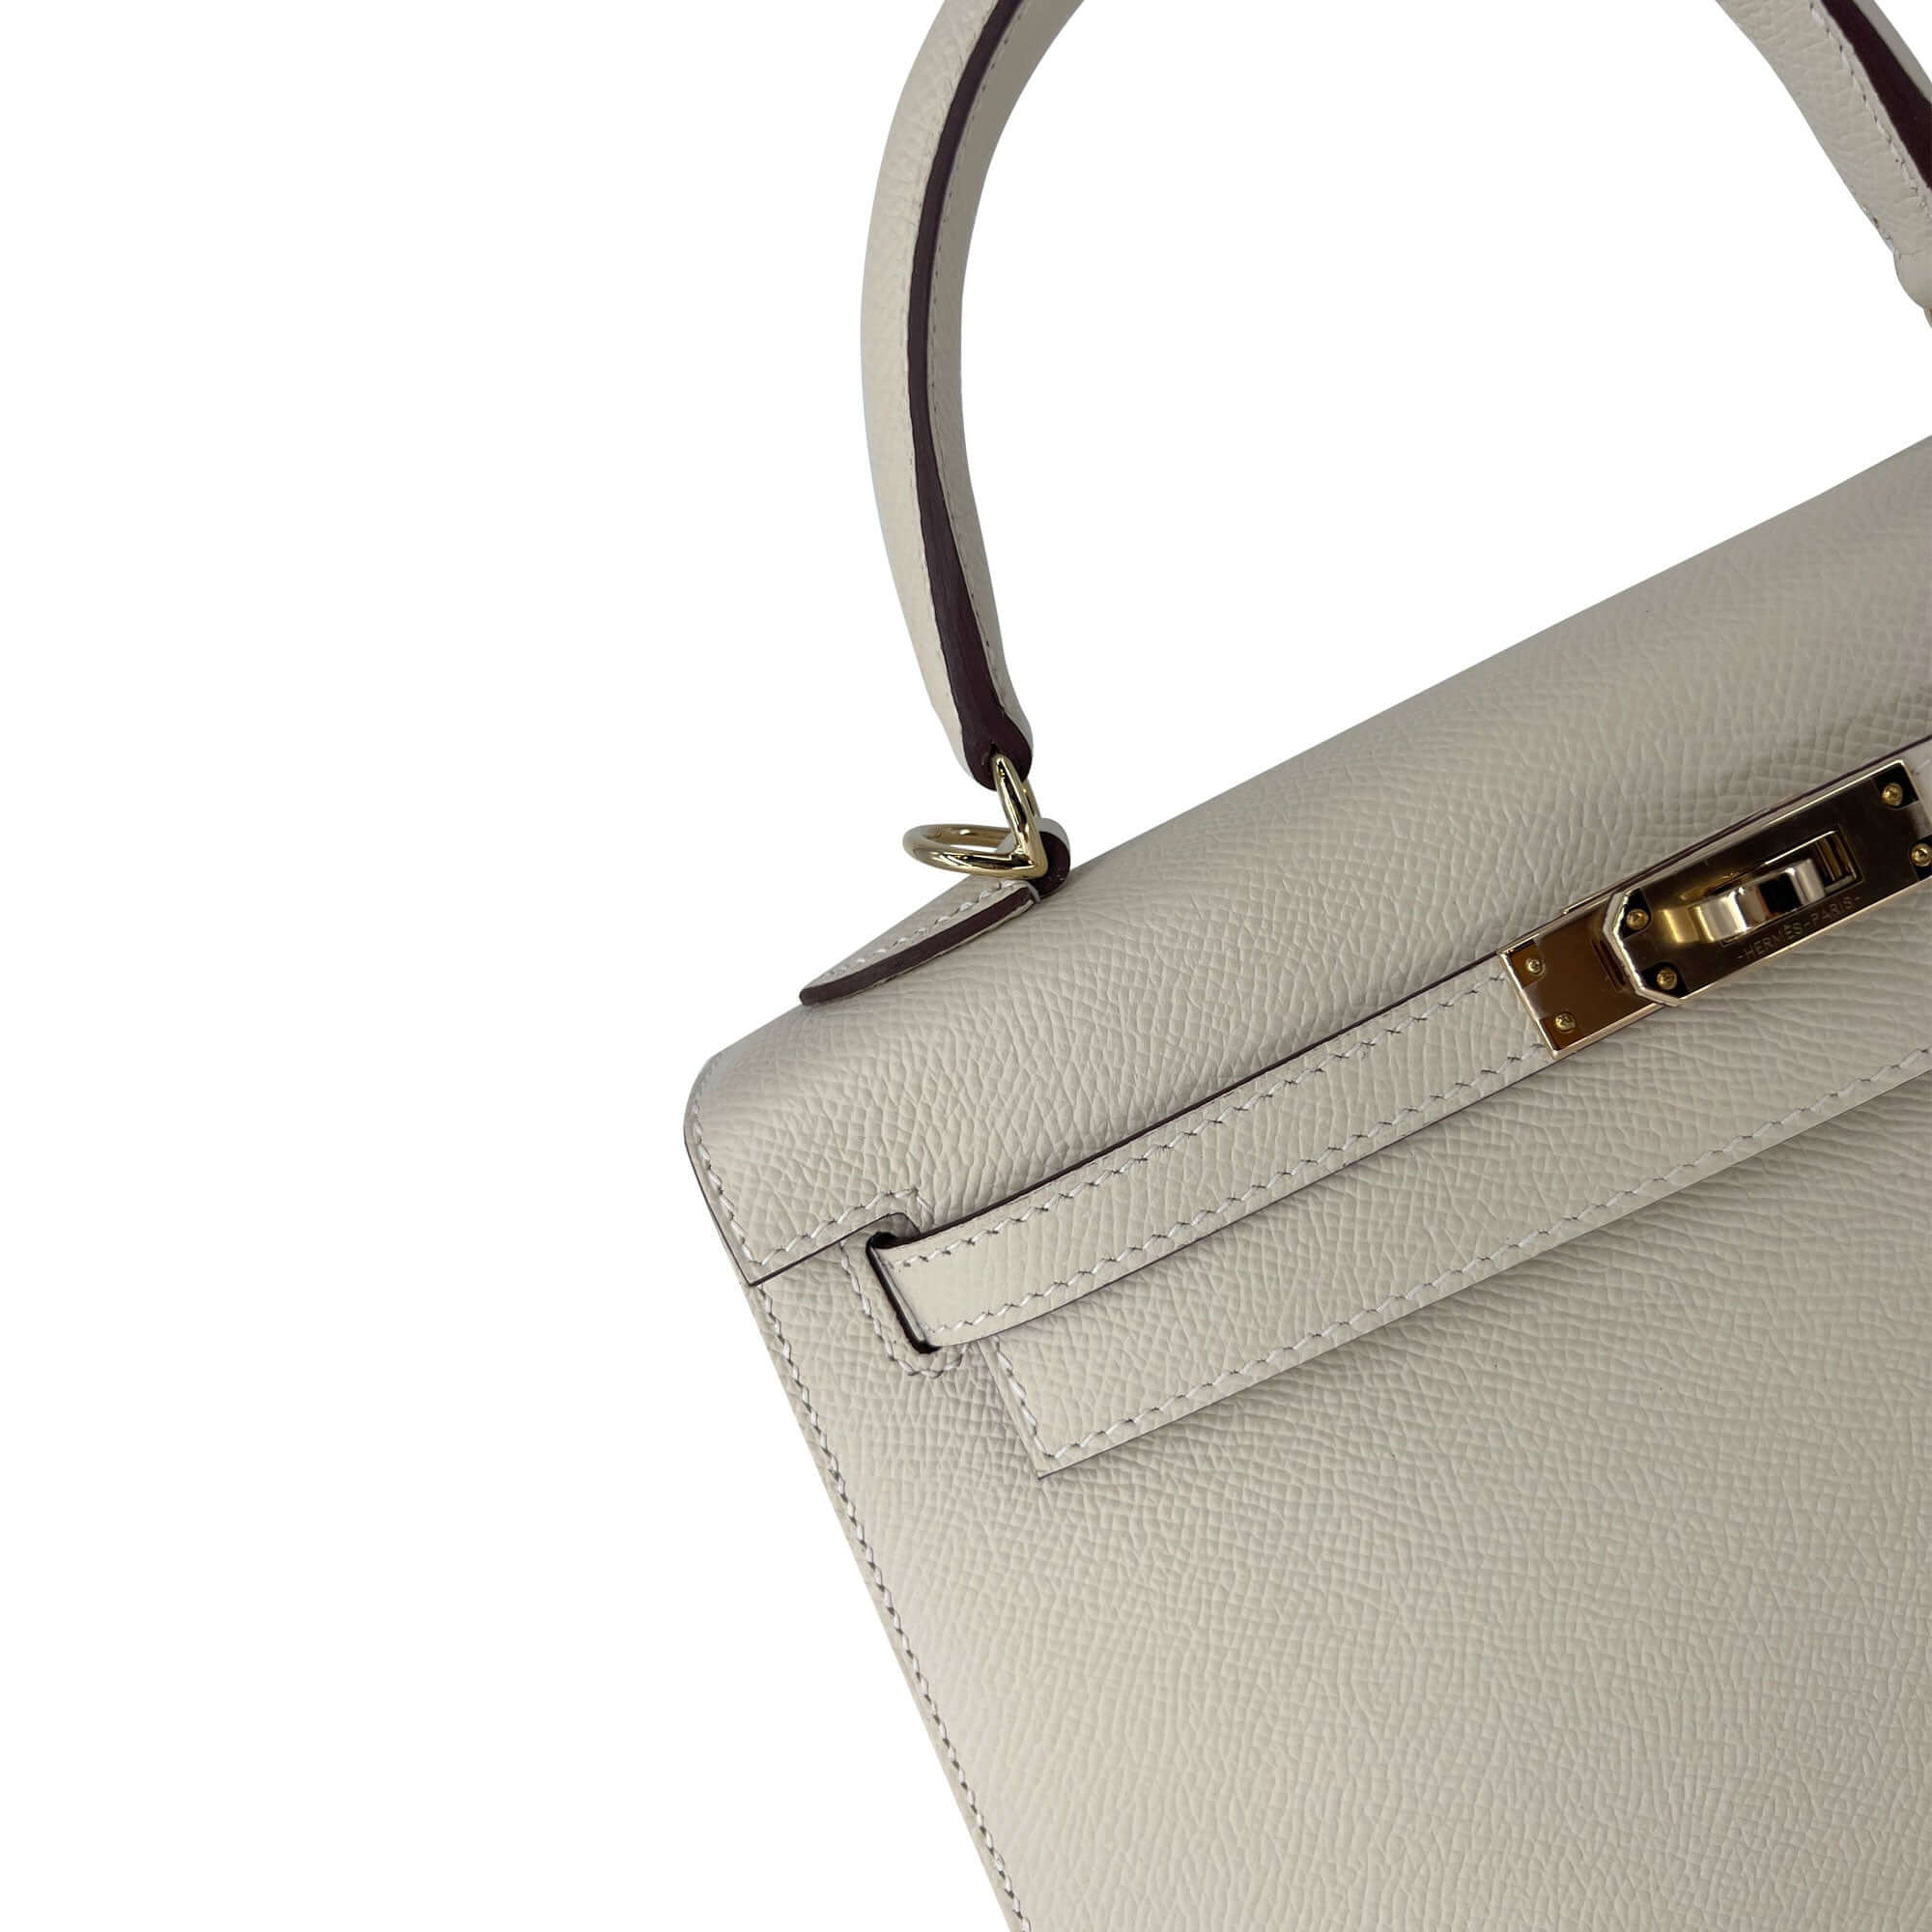 Top Quality Hermes Kelly Craie Epsom leather designer bag K25 GHW